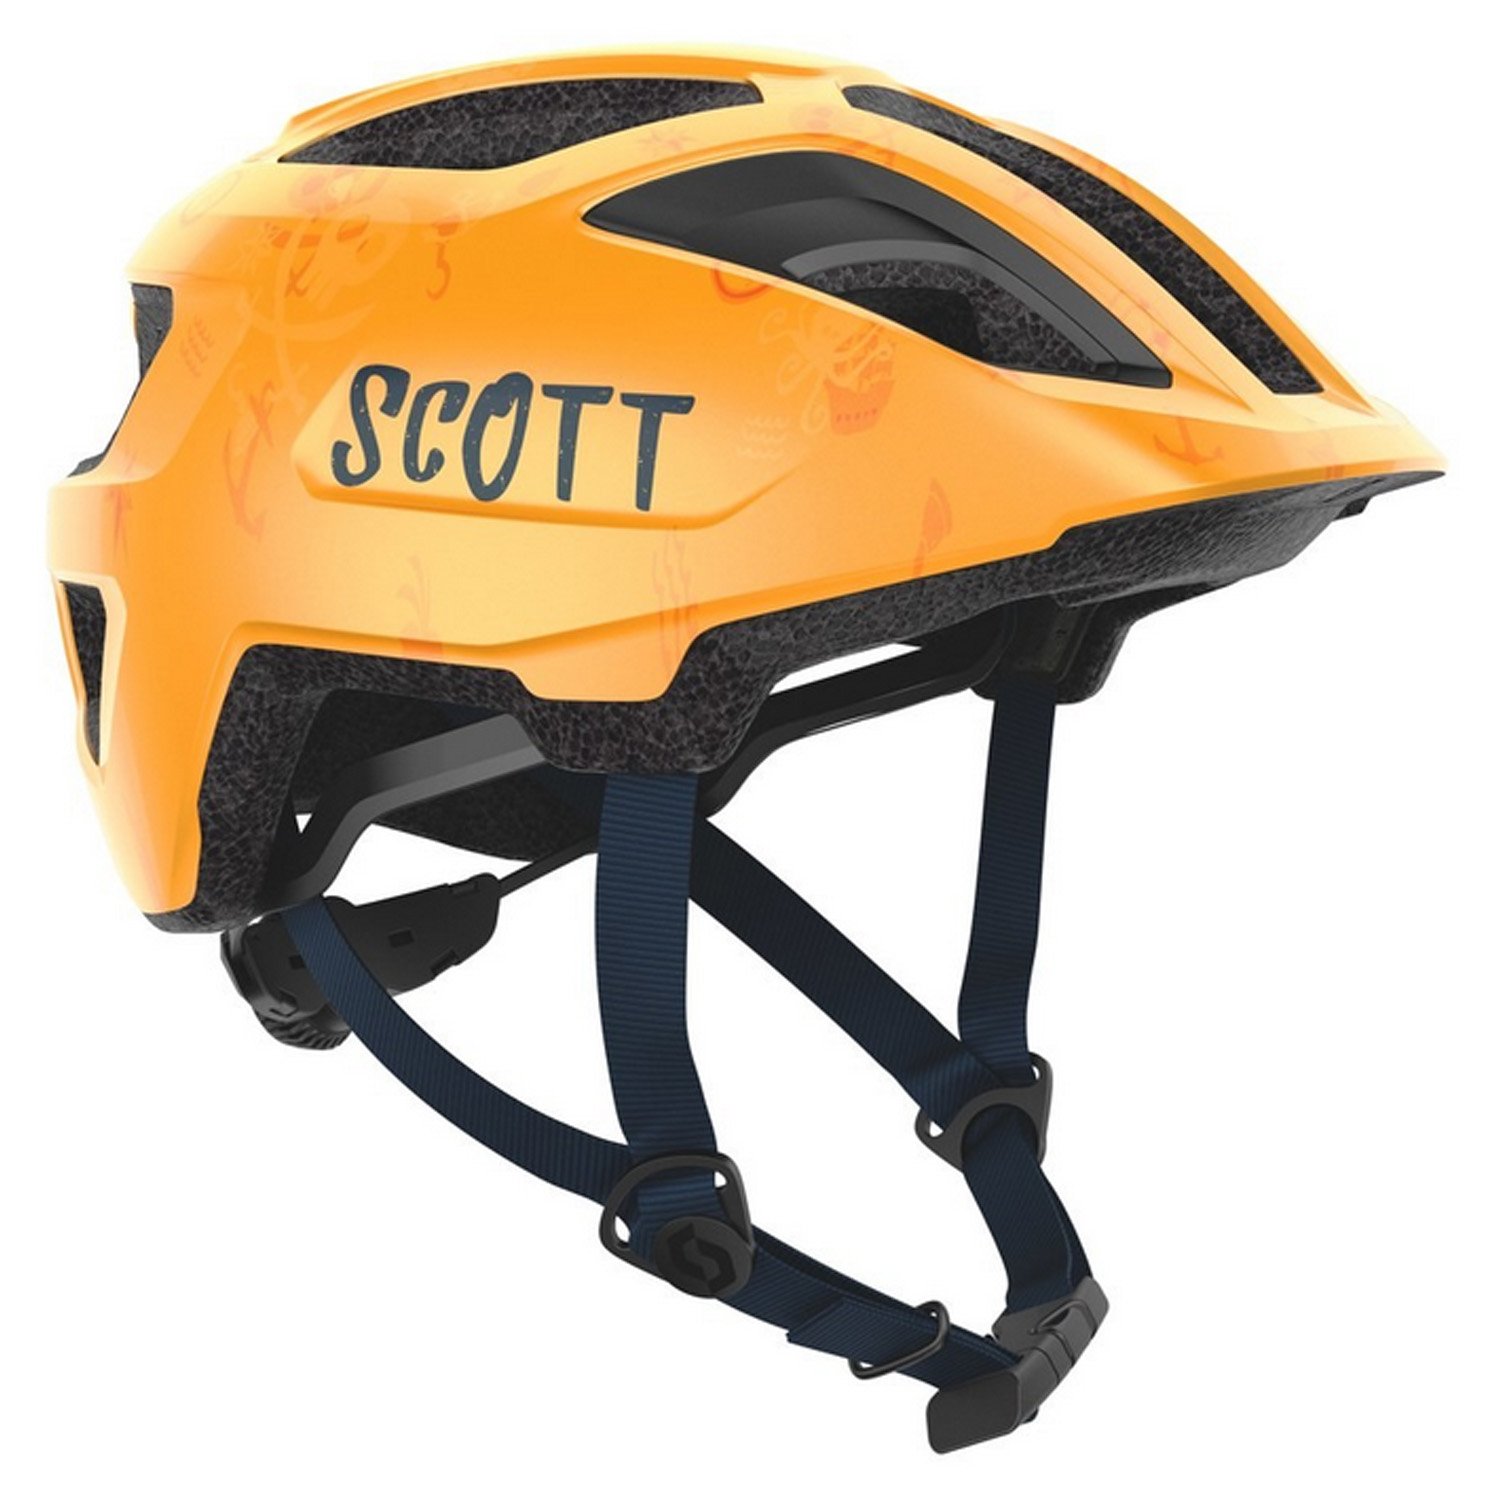 Велошлем SCOTT Kid Spunto (CE), fire orange, ES275235-6522 крышка выноса и спейсер scott для выносов syn mtb xc es290059